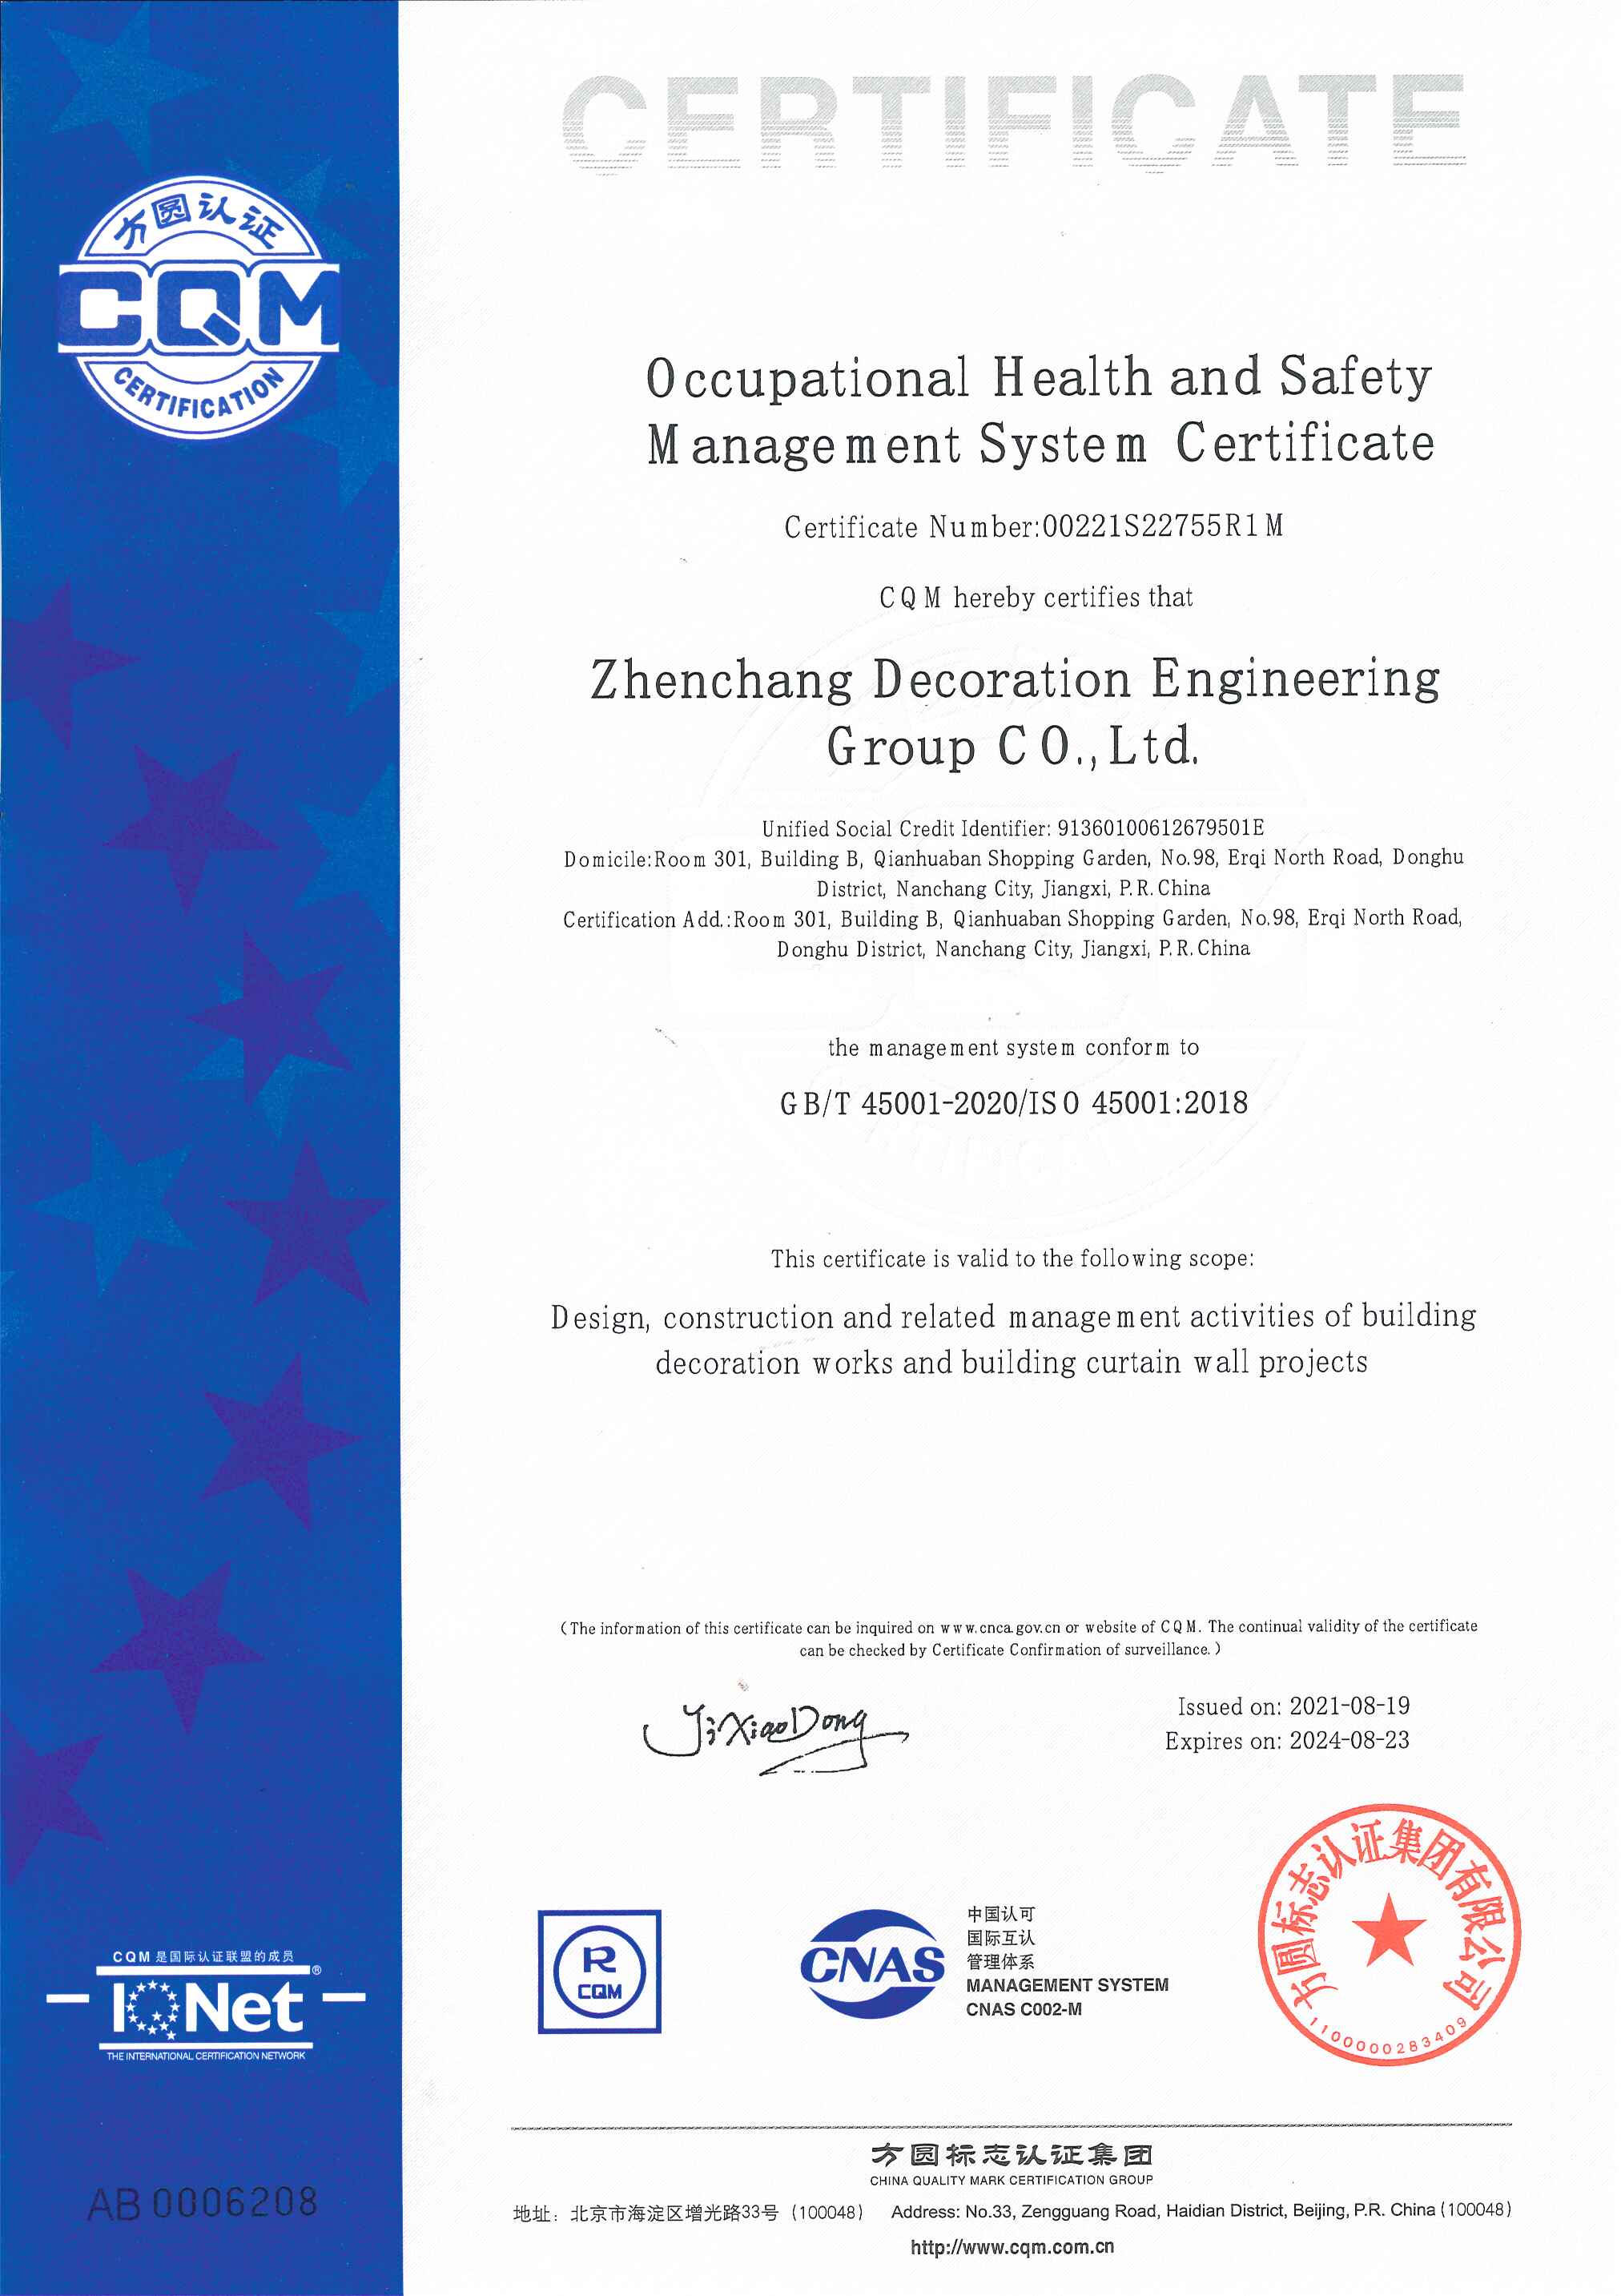 2021職業健康安全管理體系認證證書-英文版